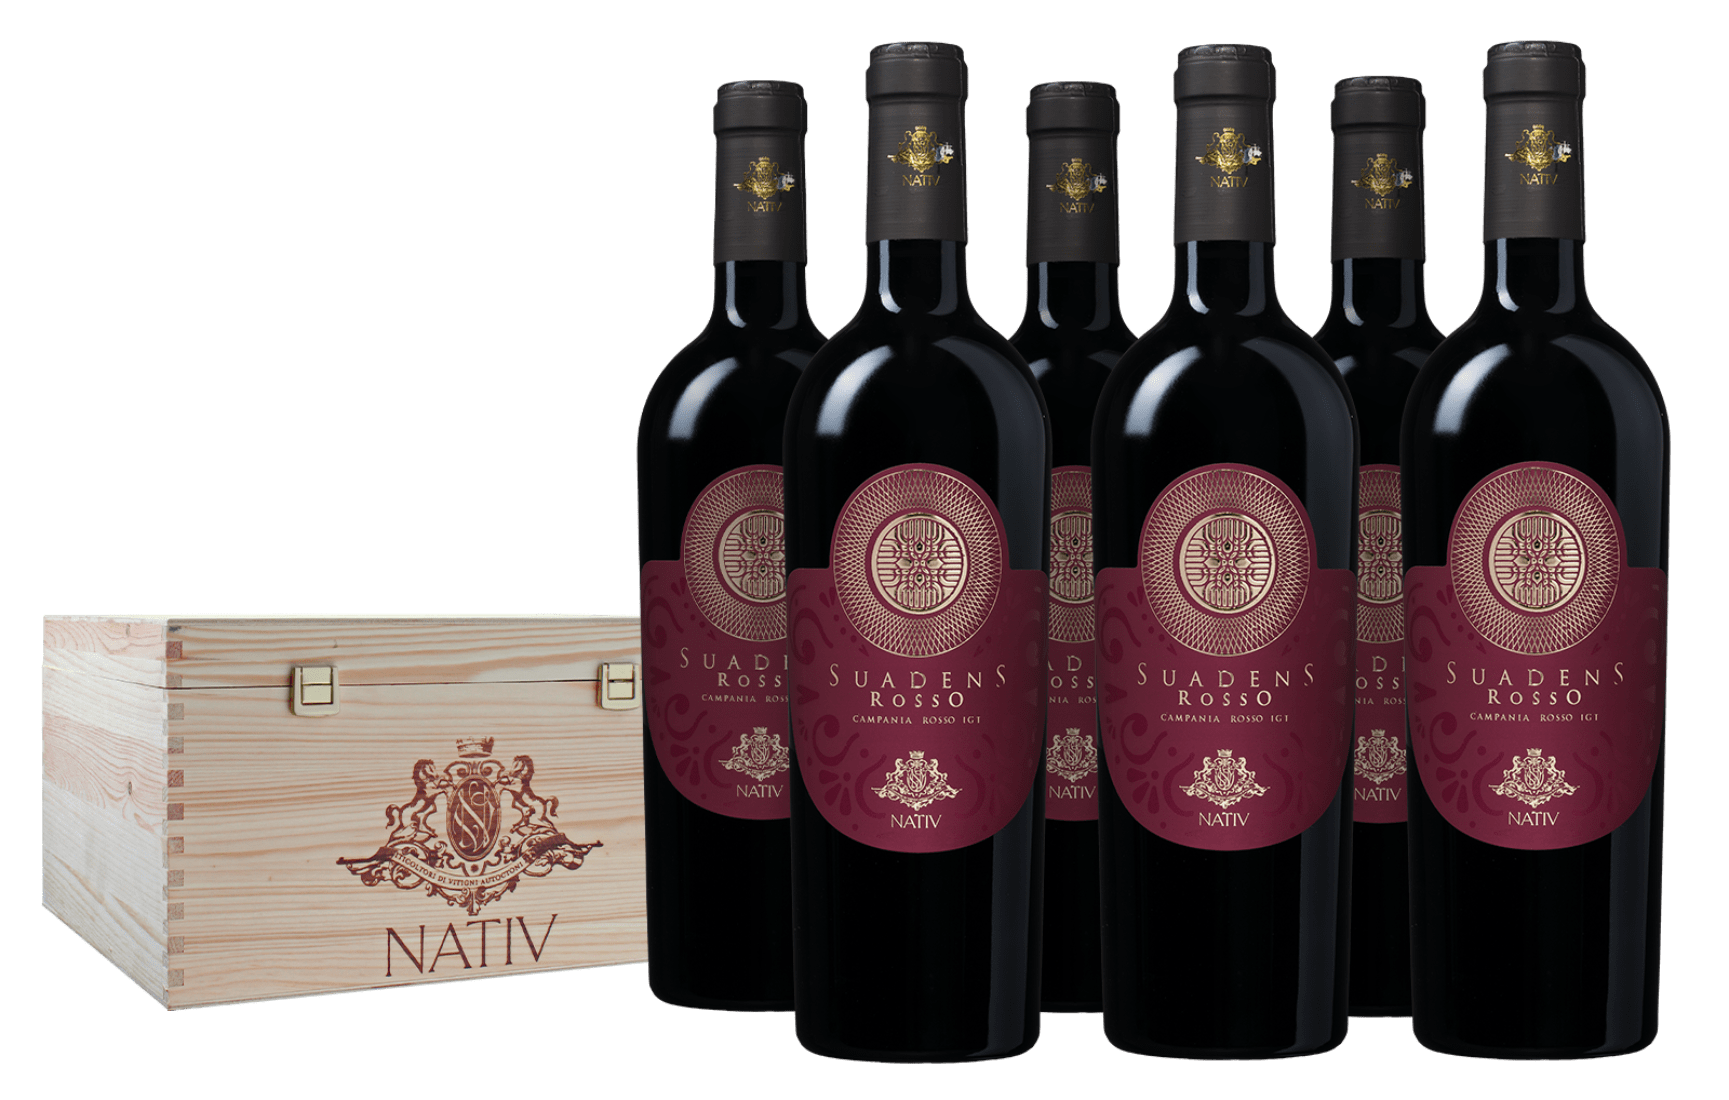 Nativ Suadens 2020 Igt Campania Rosso 6 bottiglie - Nativ